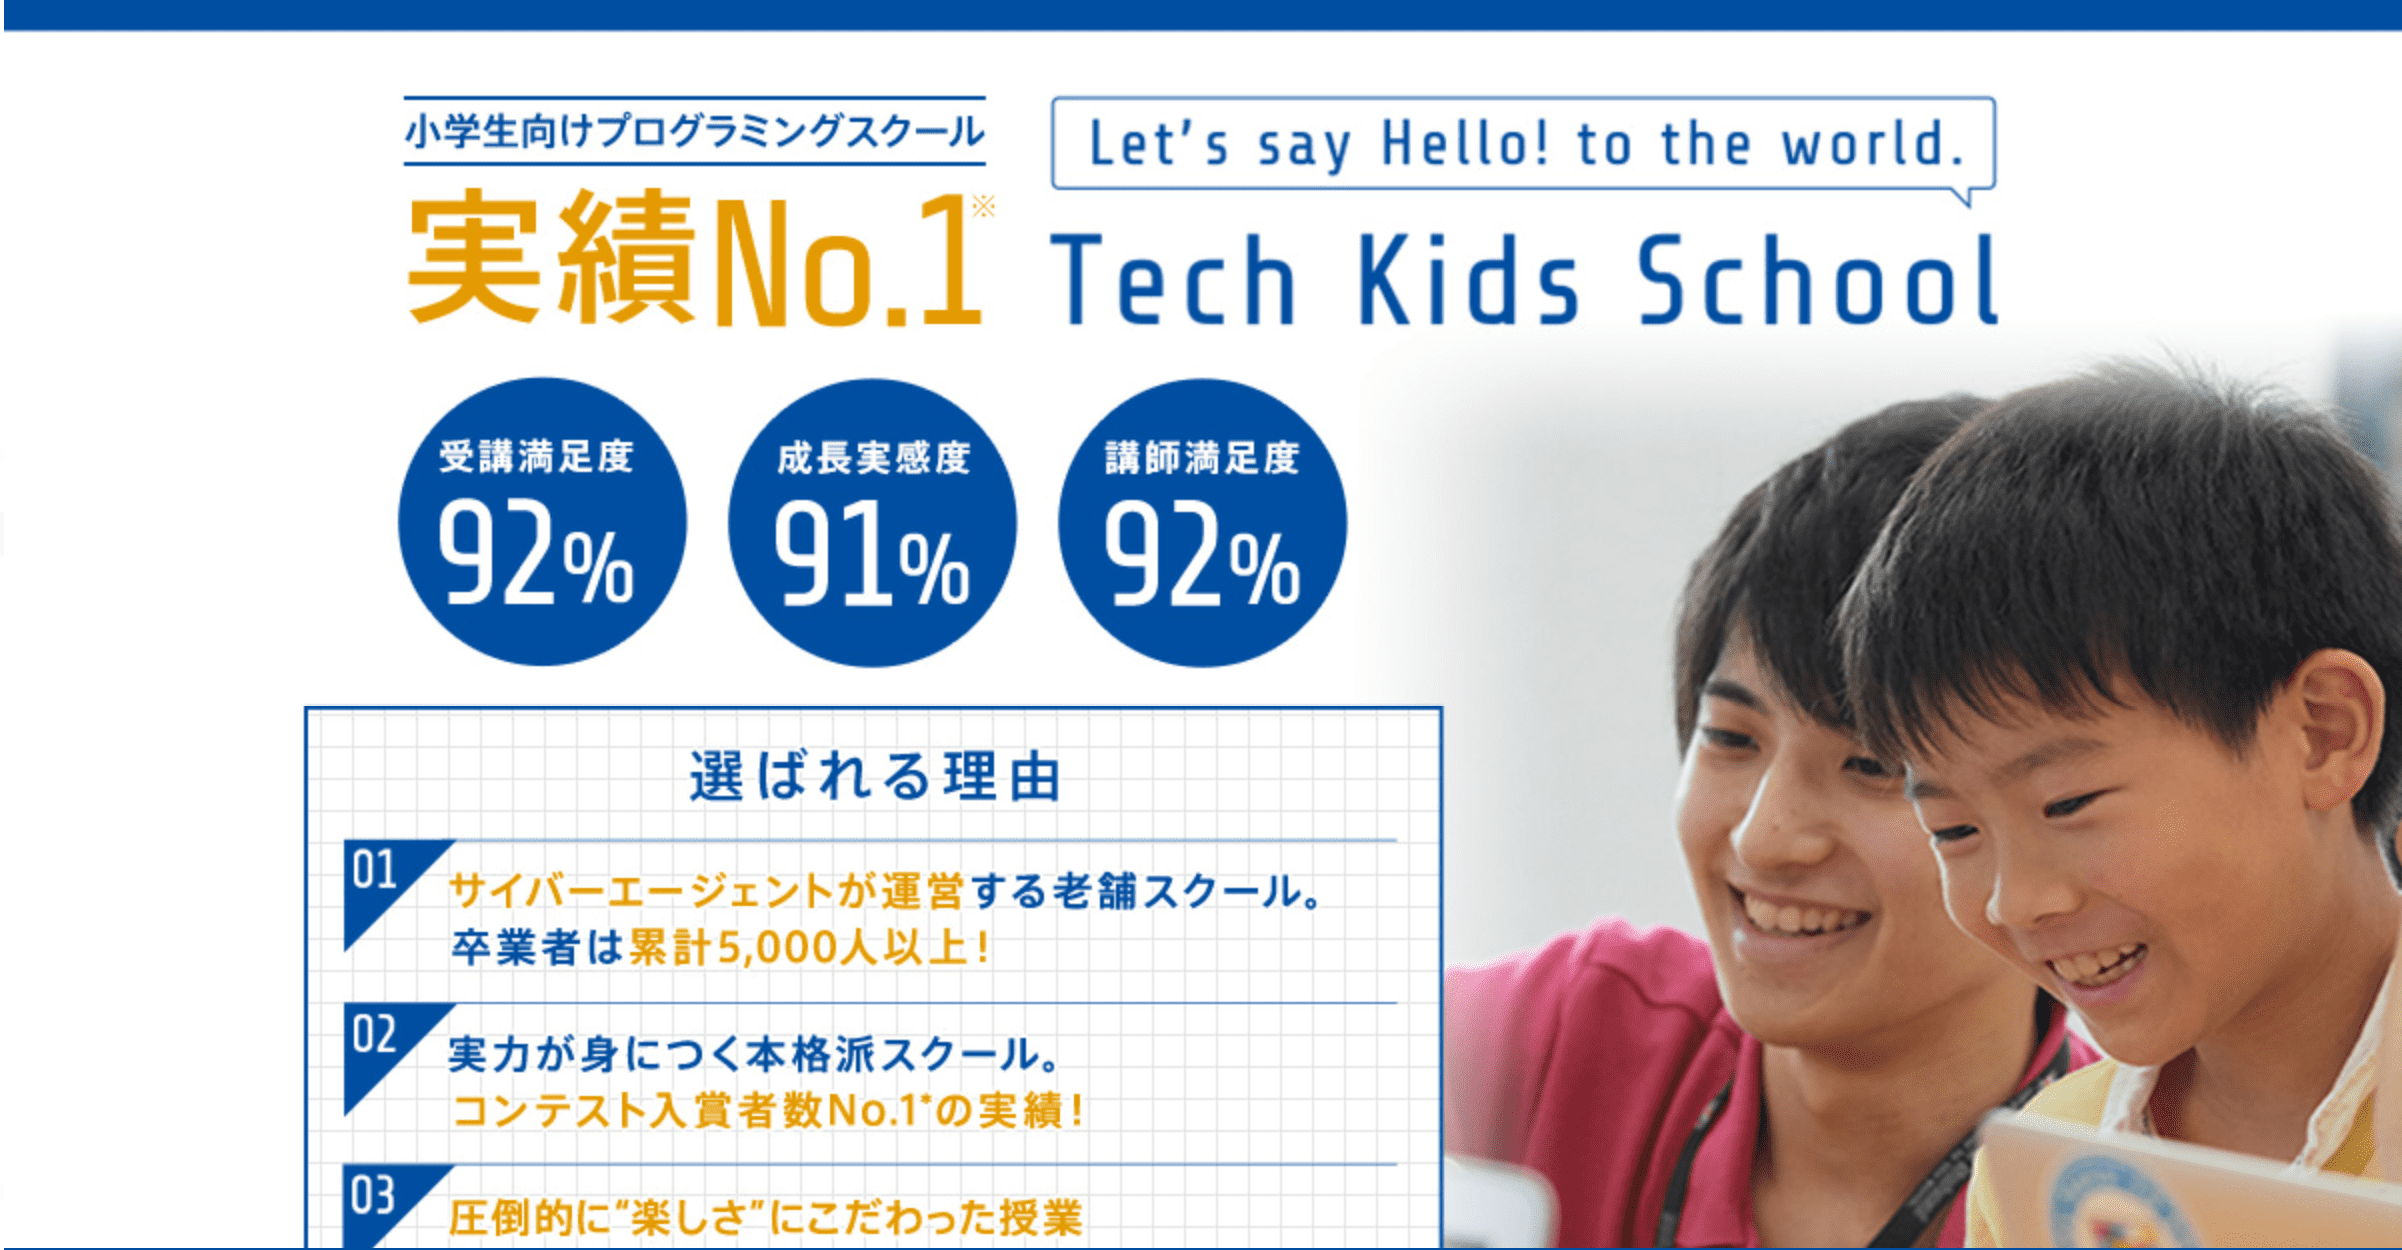 Tech KIDS School